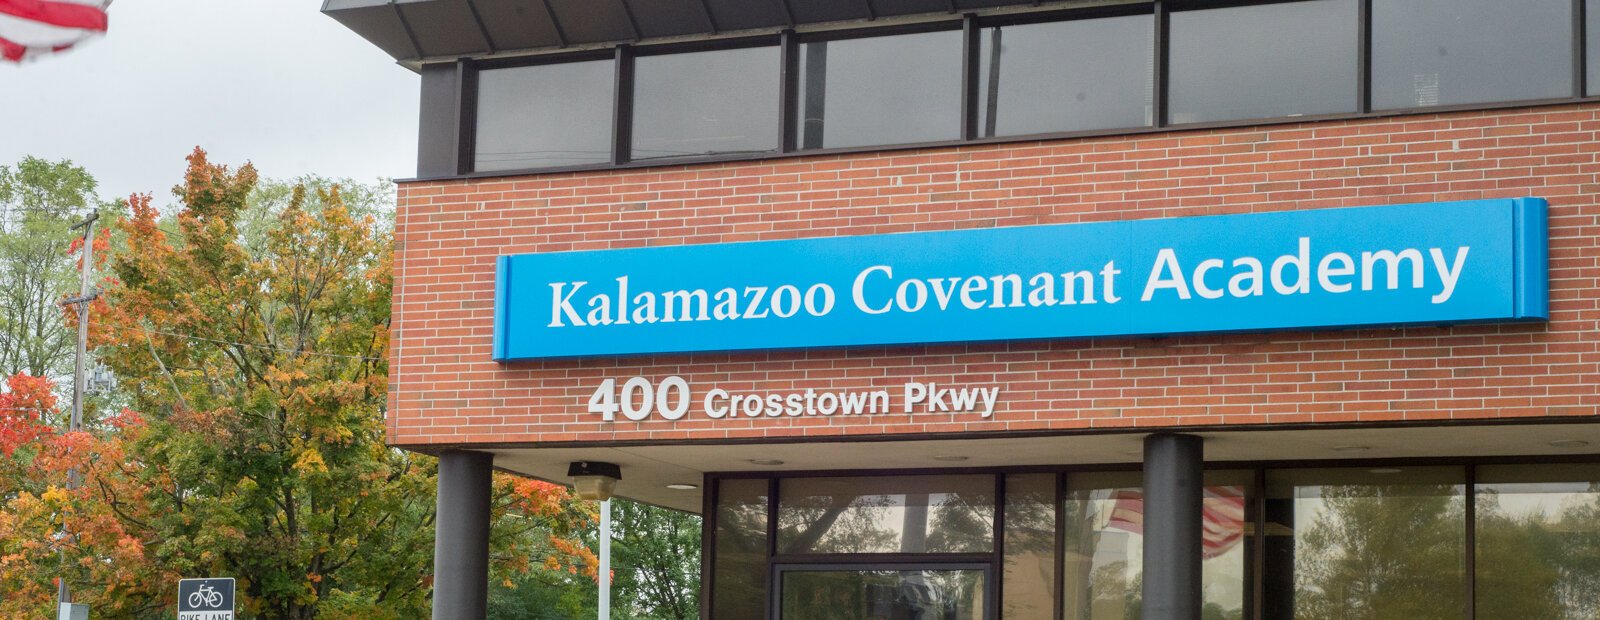  Kalamazoo Covenant Academy